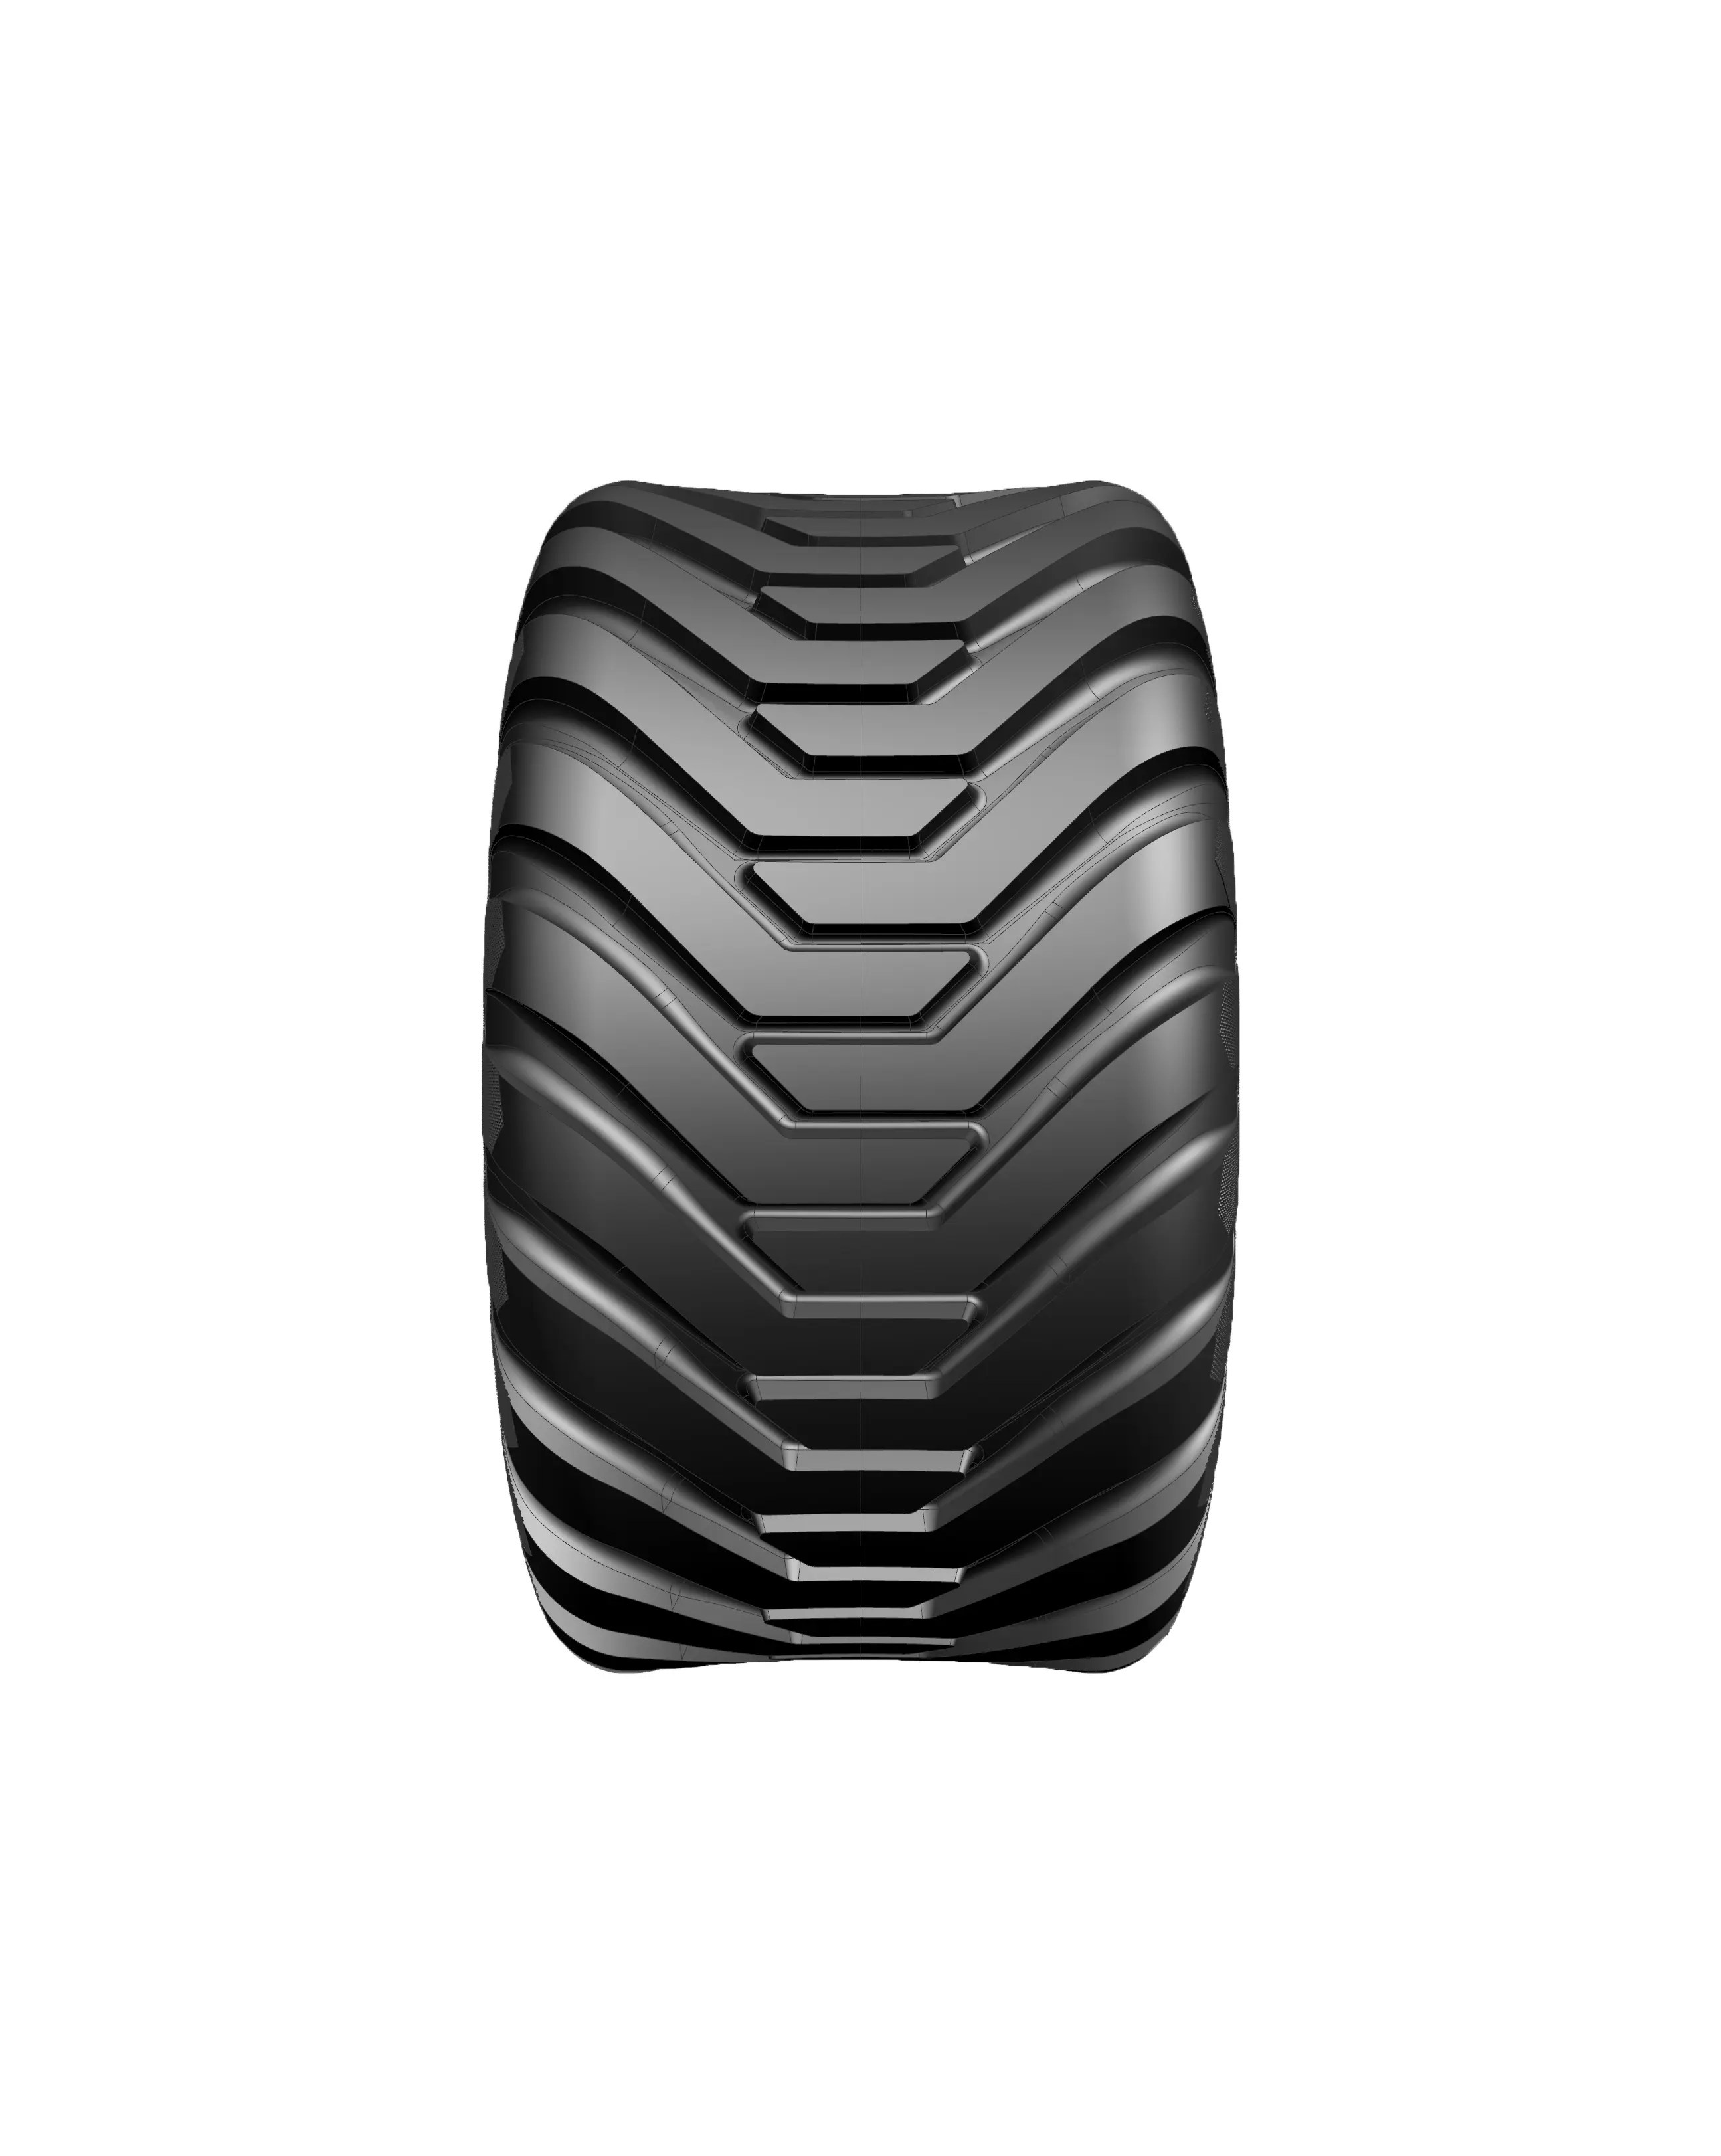 Pneus agrícolas Trator Pneu 400/60-15.5IMP alta qualidade pneu